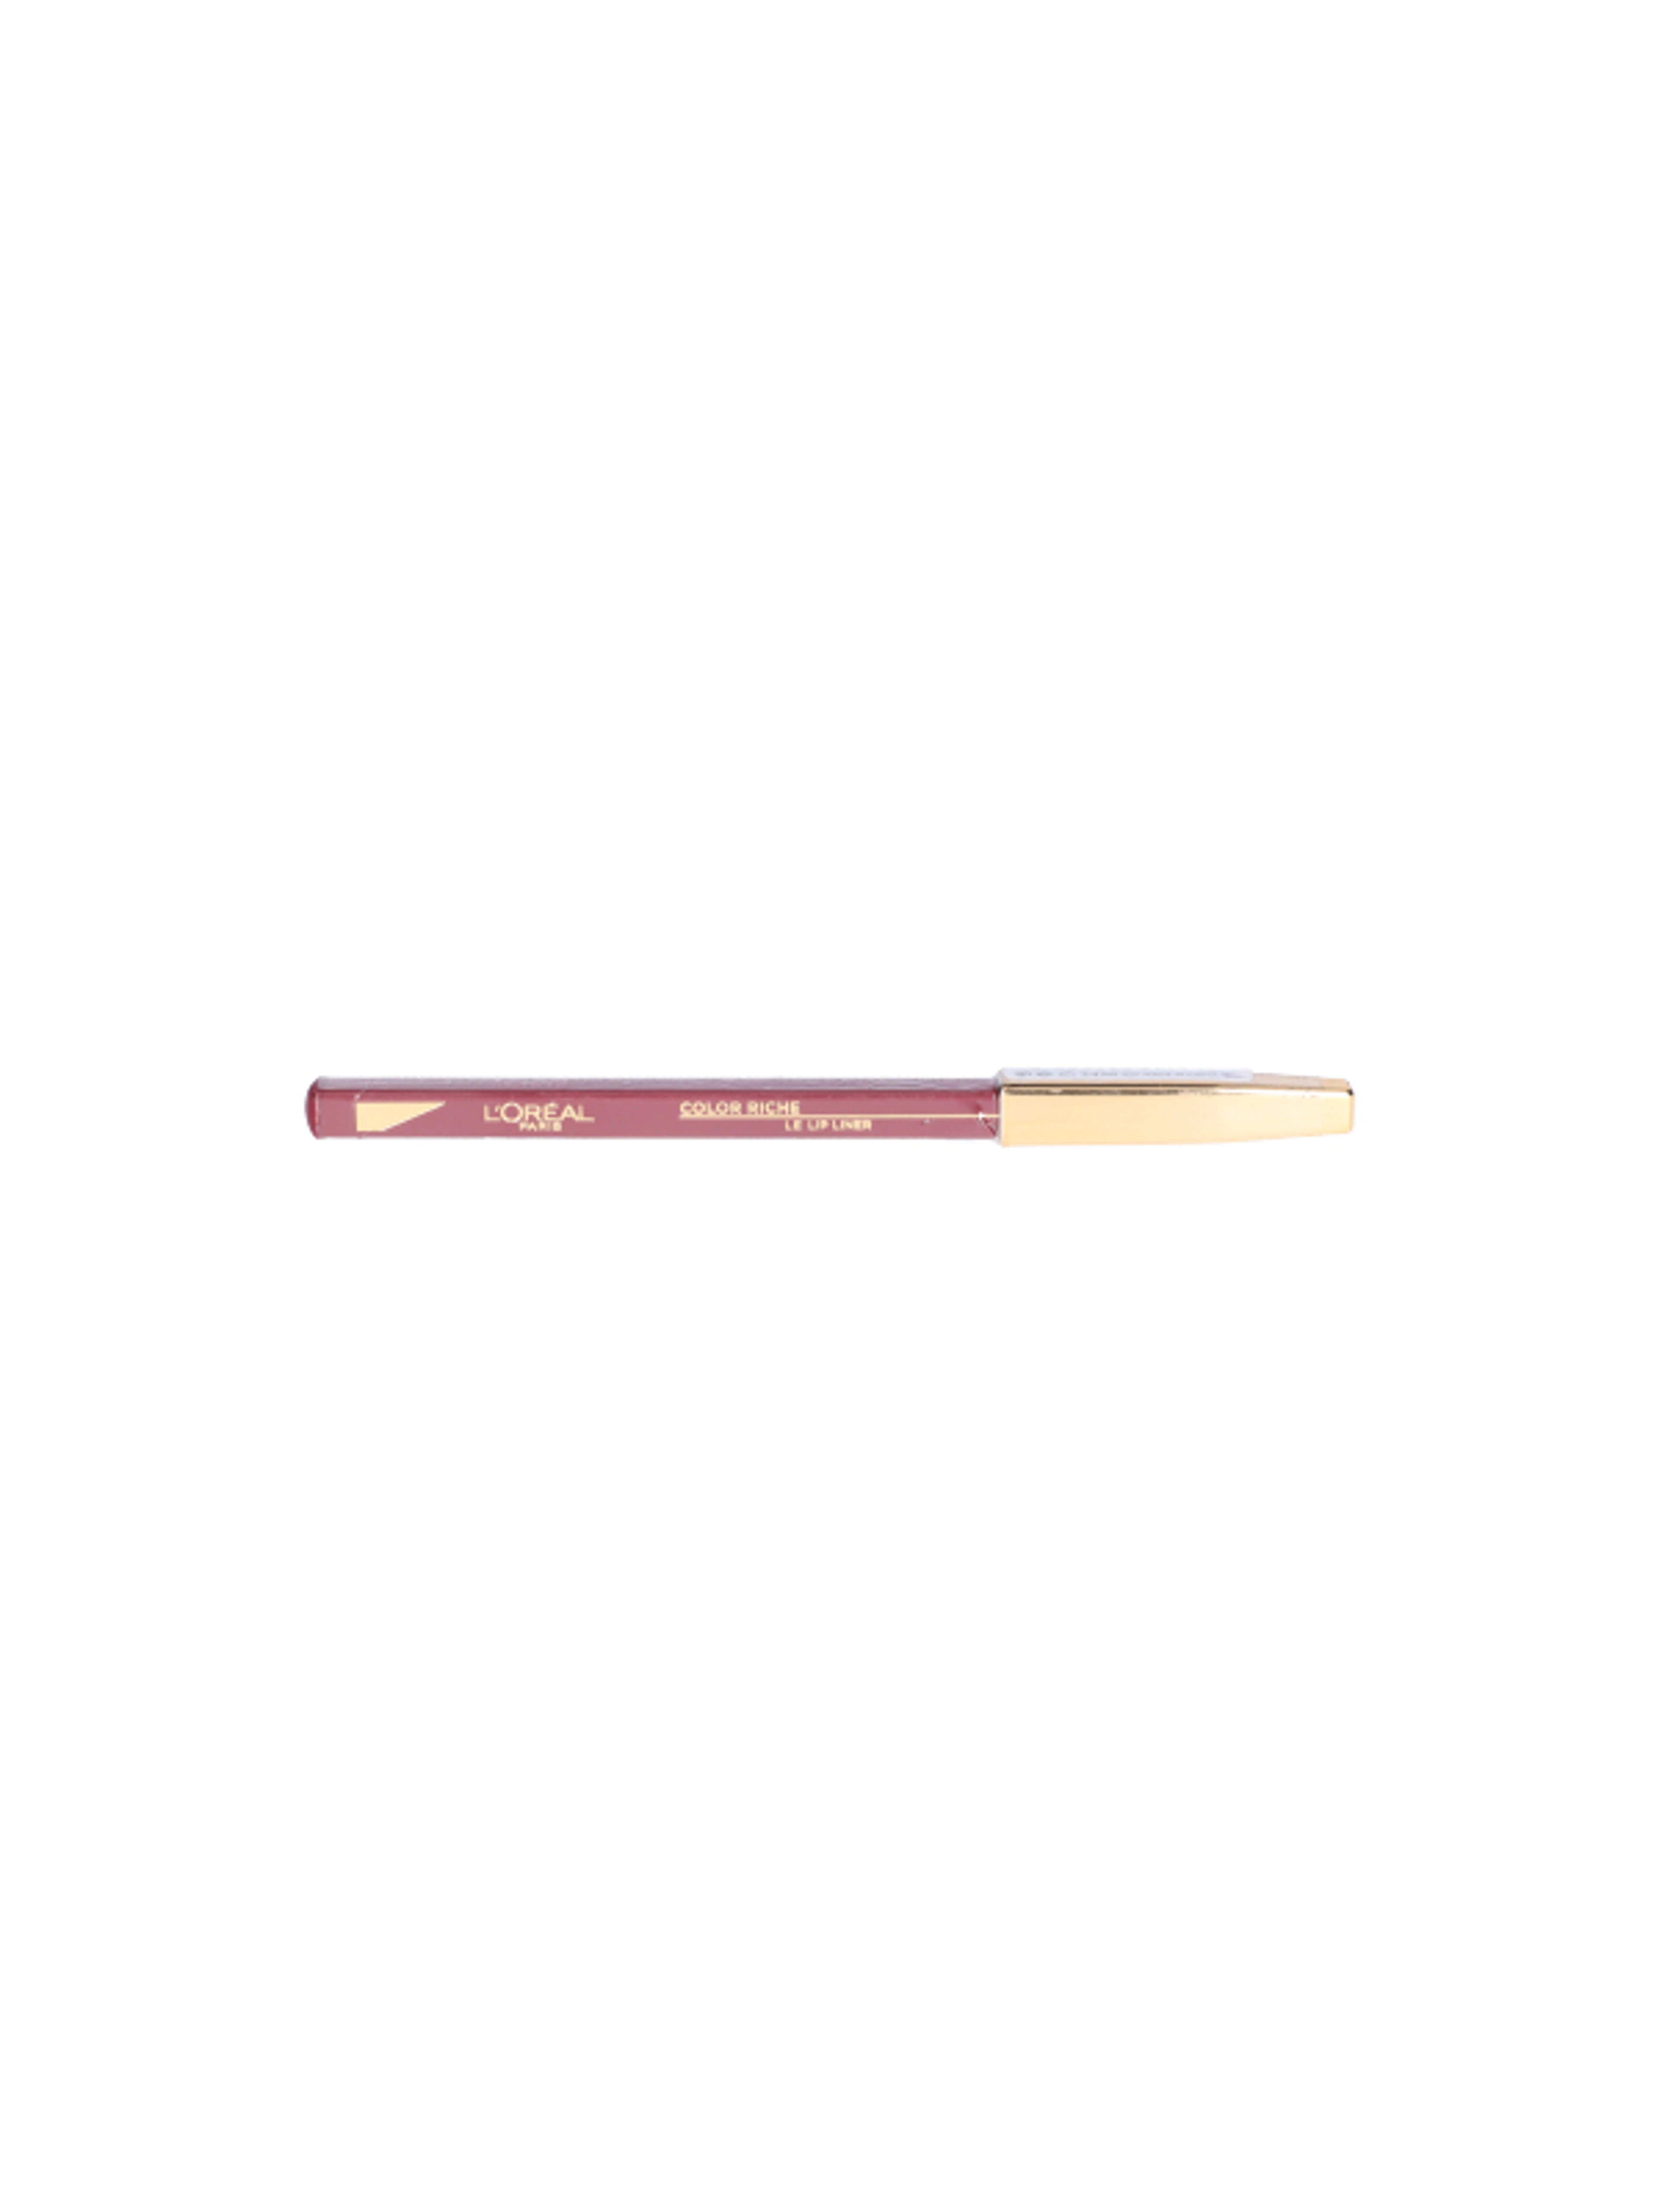 L'Oréal Paris Color Riche ajakkontúr ceruza 127 - 1 db